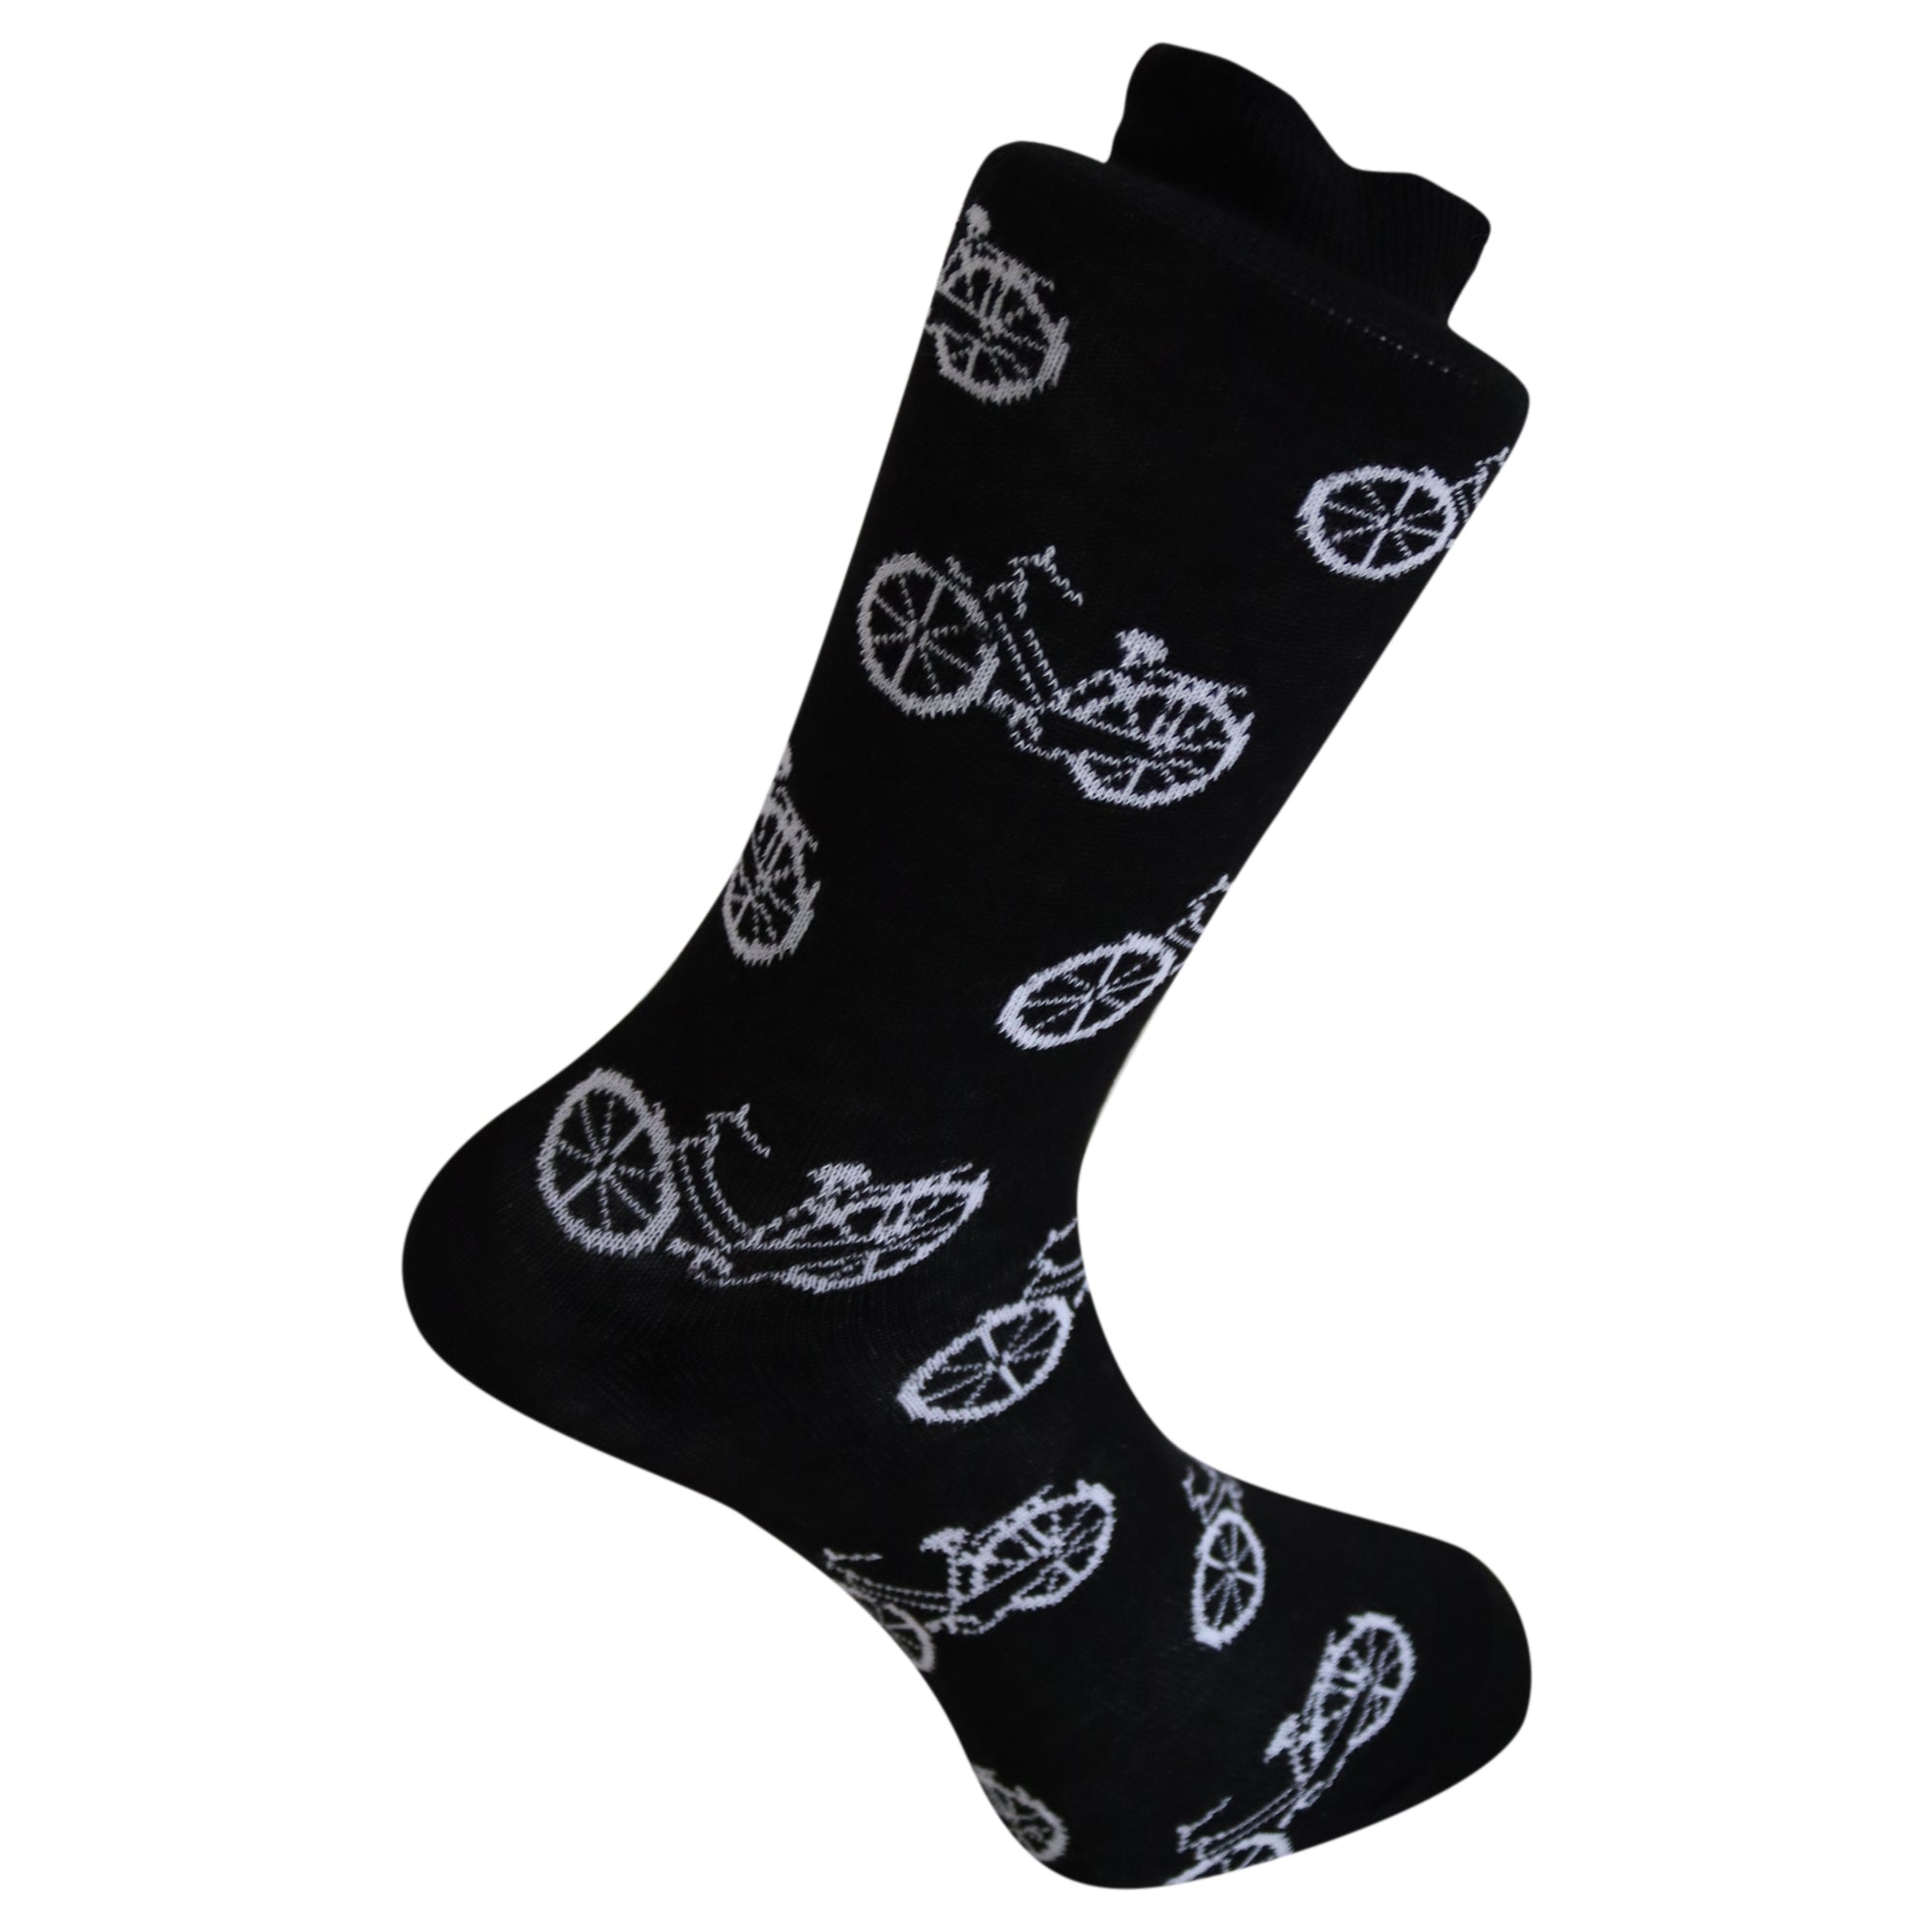 Louluu Bicycle Crew Socks